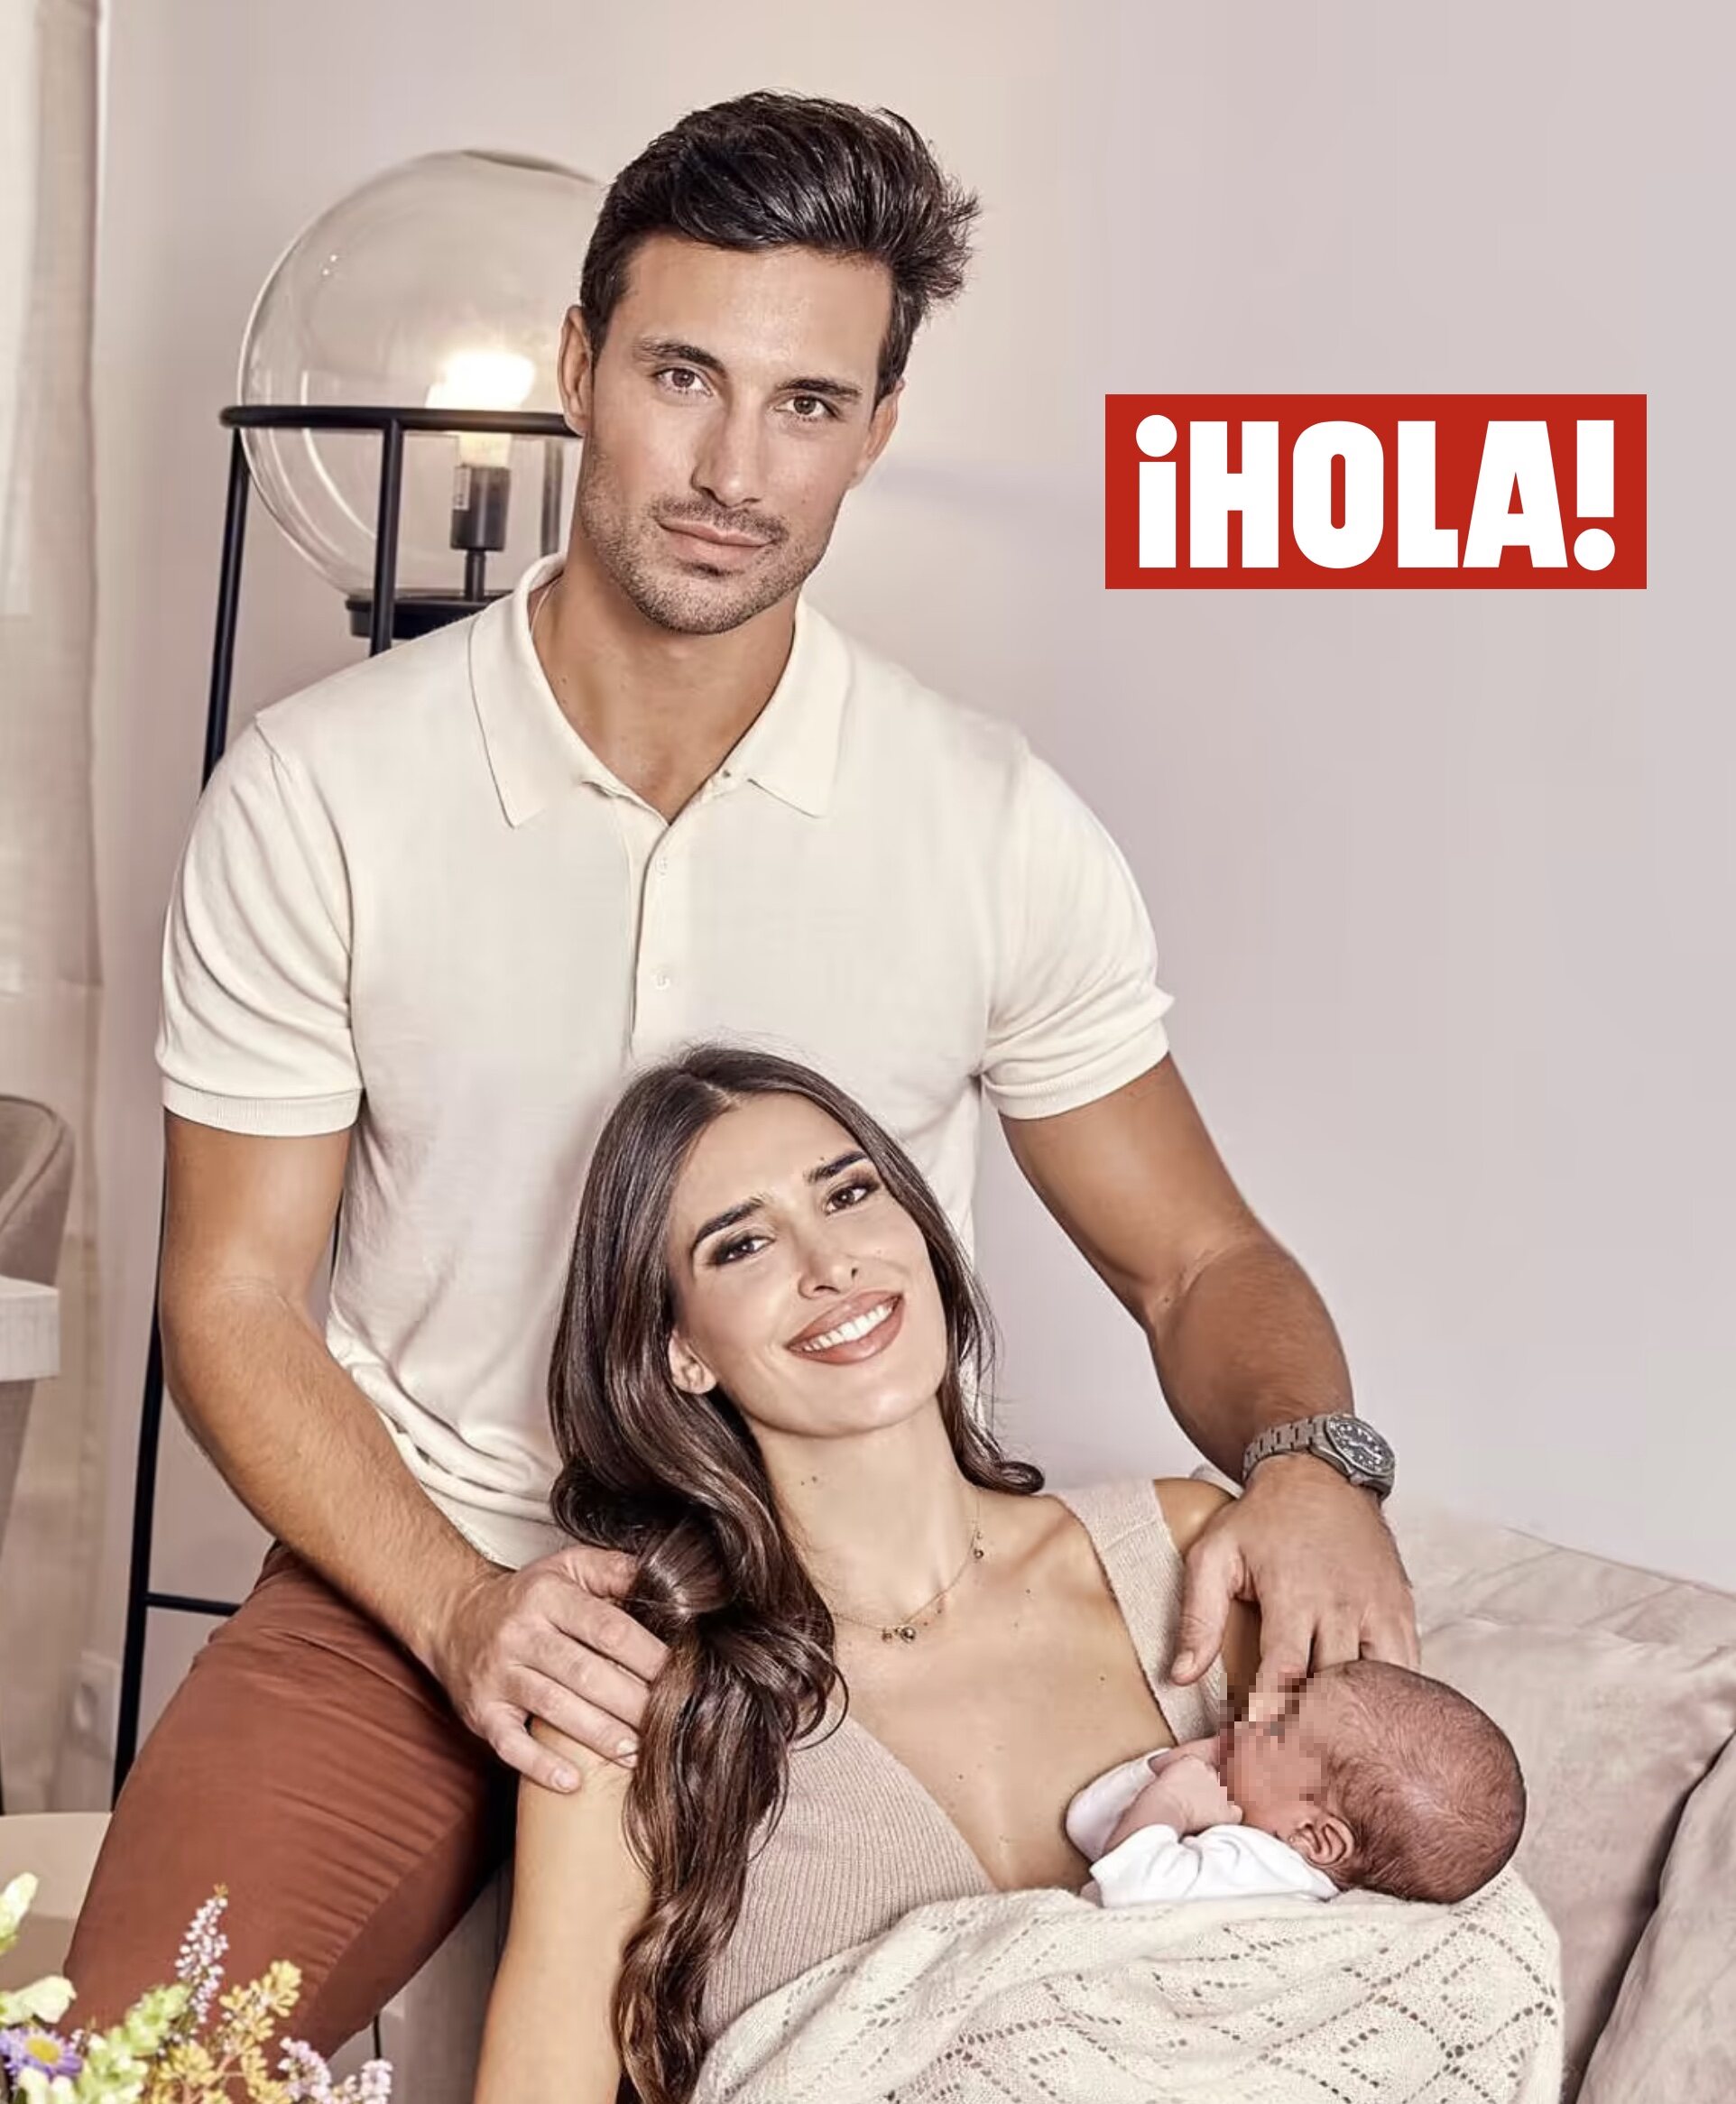 Lidia Torrent y Jaime Aastrain con su hija en la portada de ¡Hola!